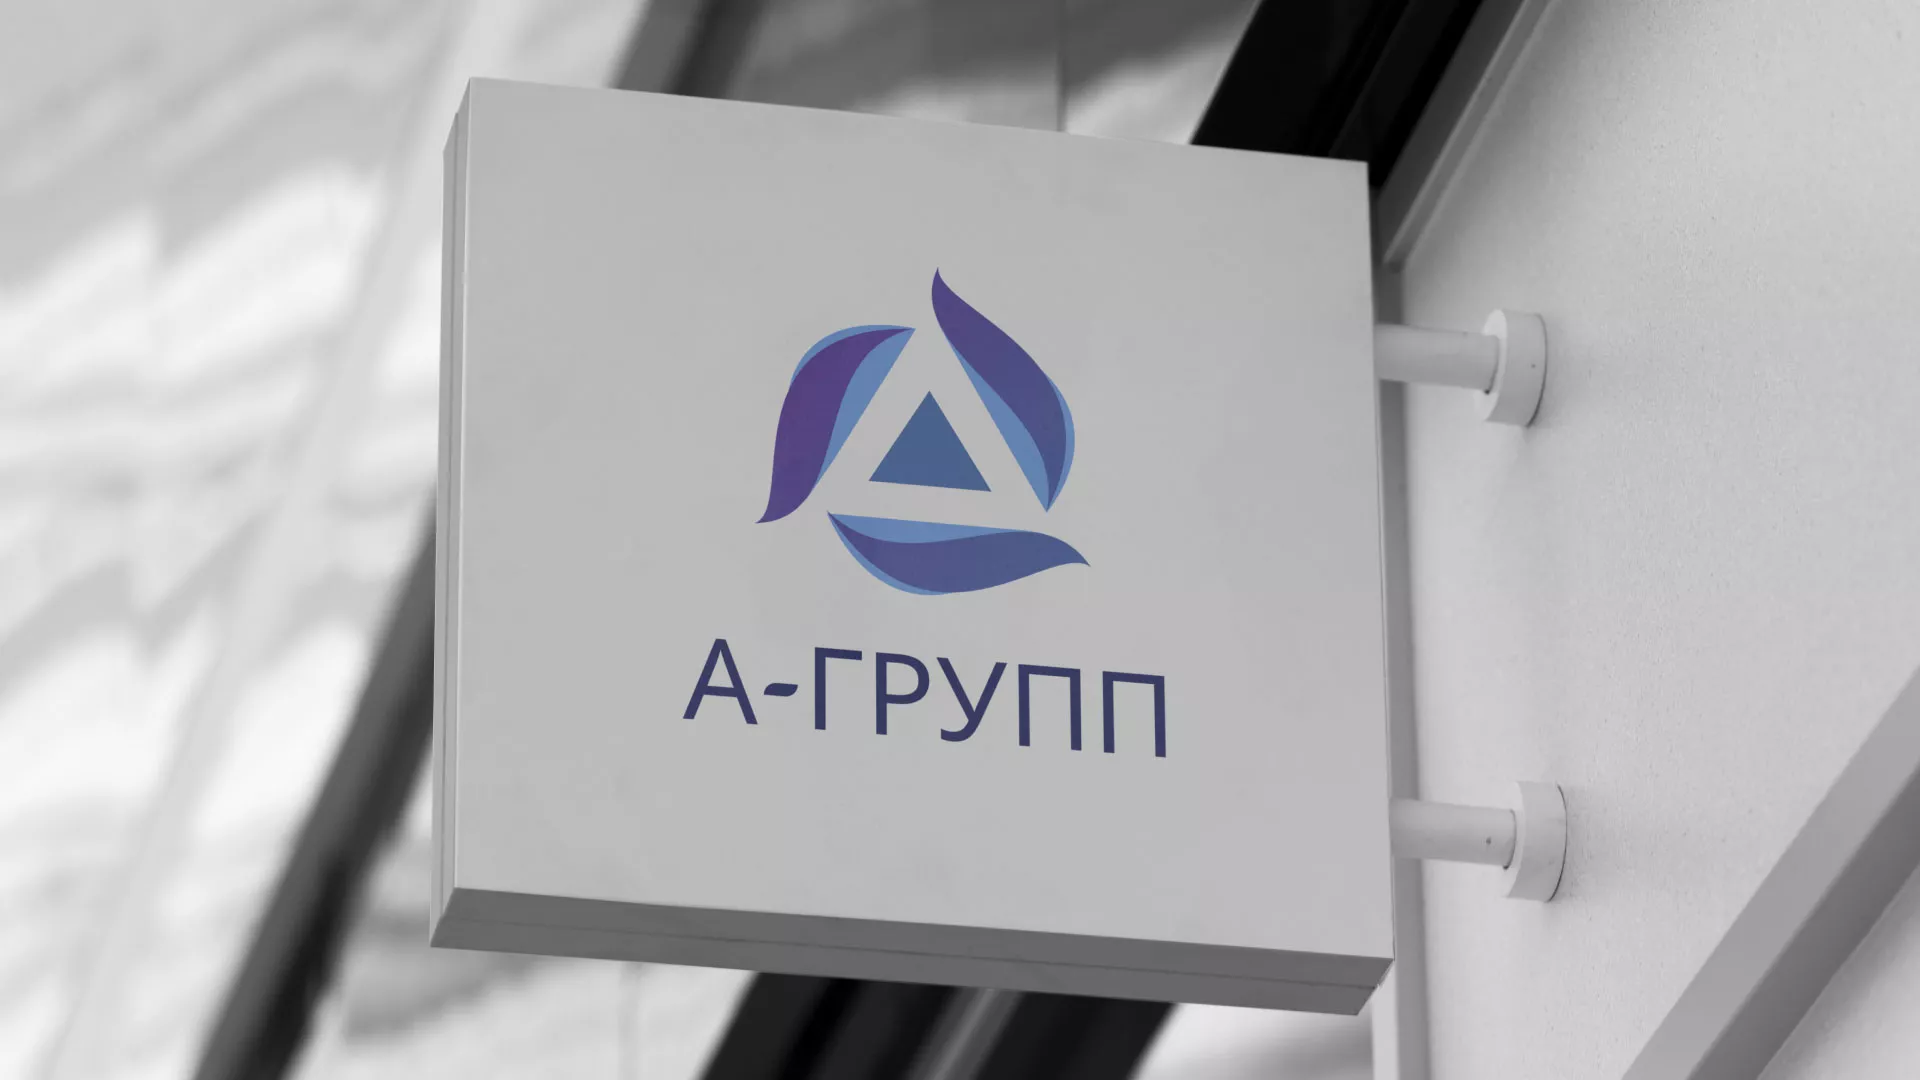 Создание логотипа компании «А-ГРУПП» в Шахунье